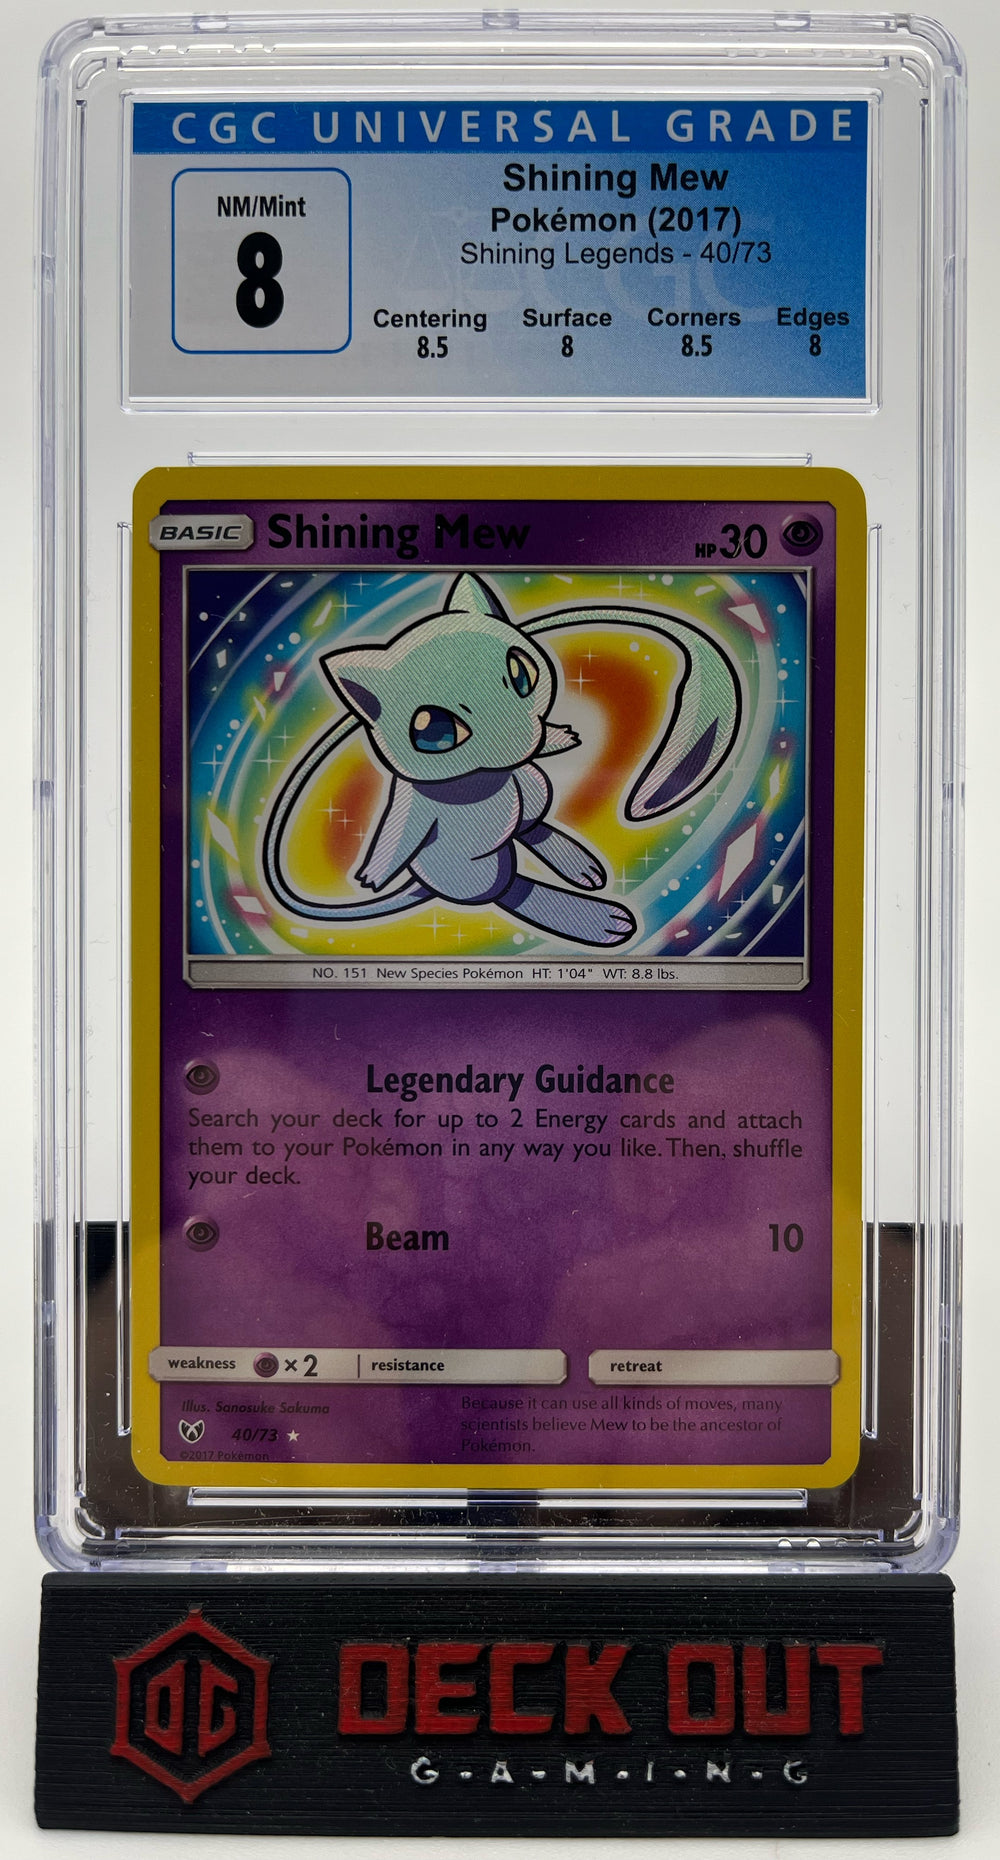 Shining Mew - Shining Legends - 40/73 - CGC 8.0 (8.5/8.0/8.5/8.0)